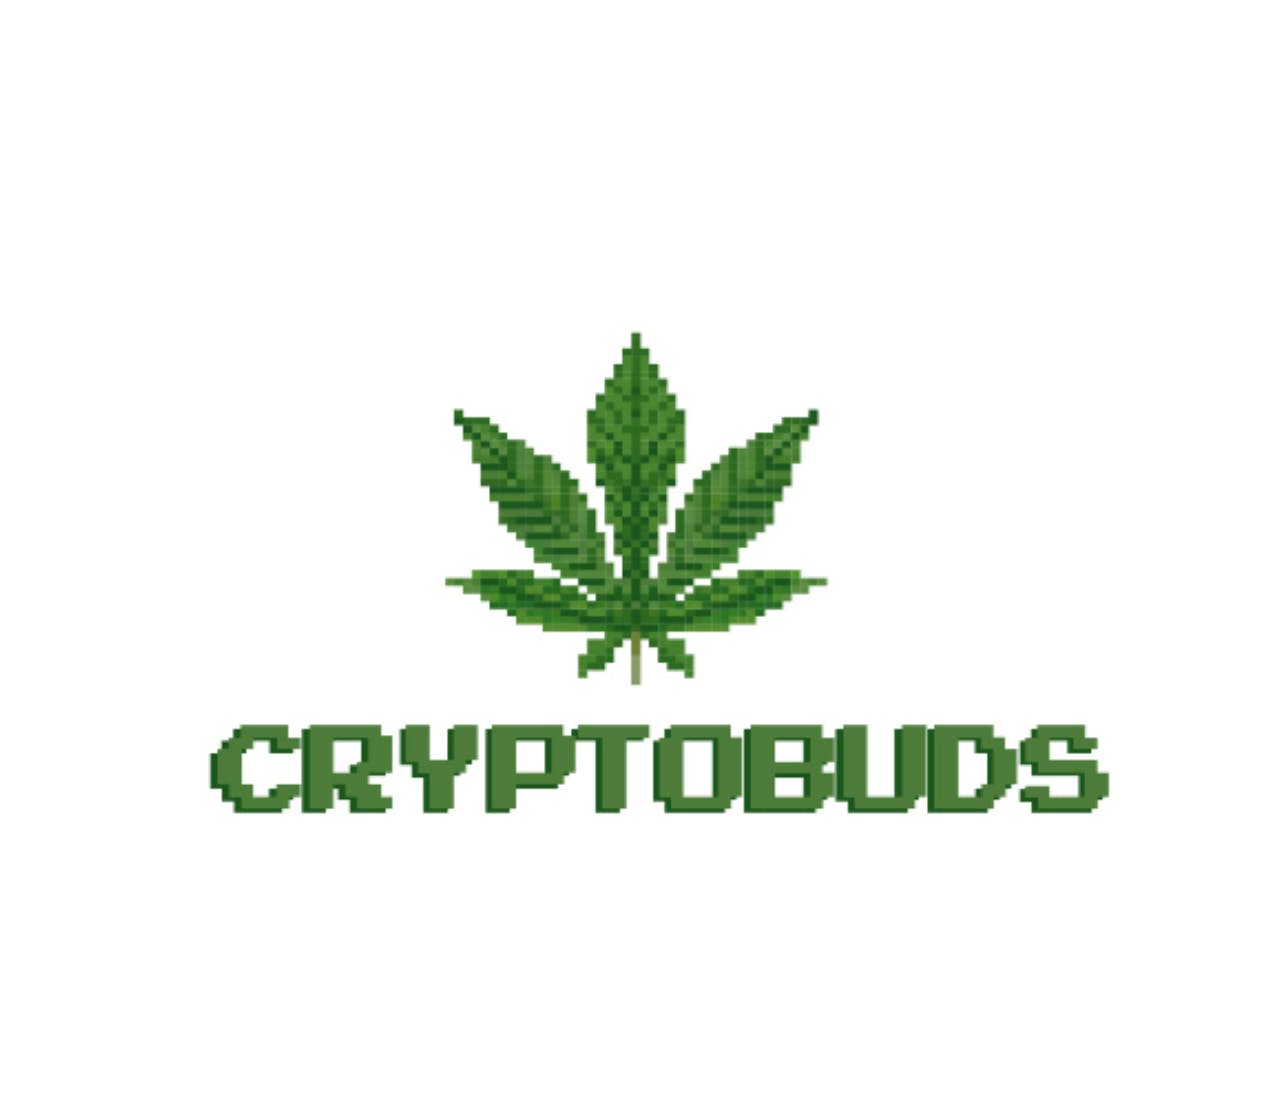 Cryptobuds Logo